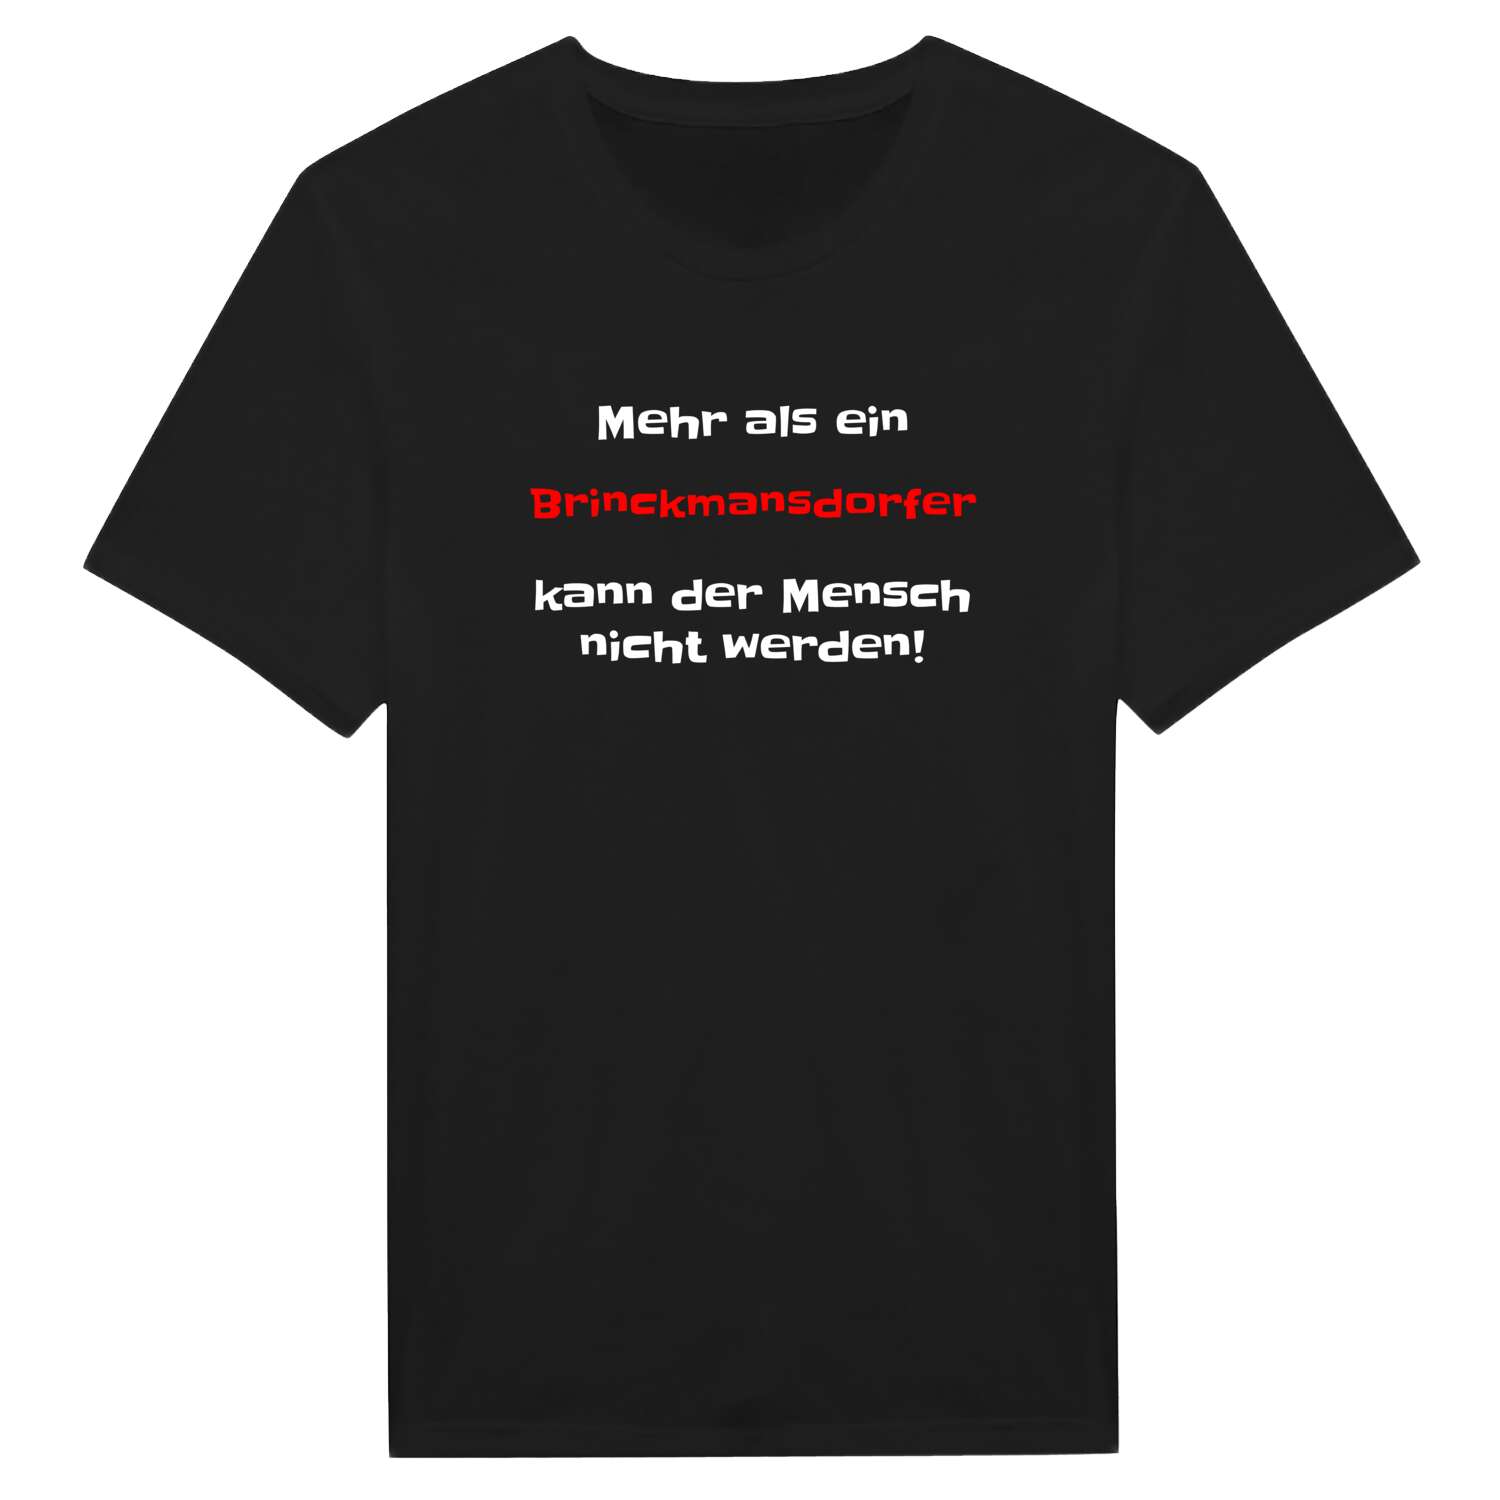 Brinckmansdorf T-Shirt »Mehr als ein«